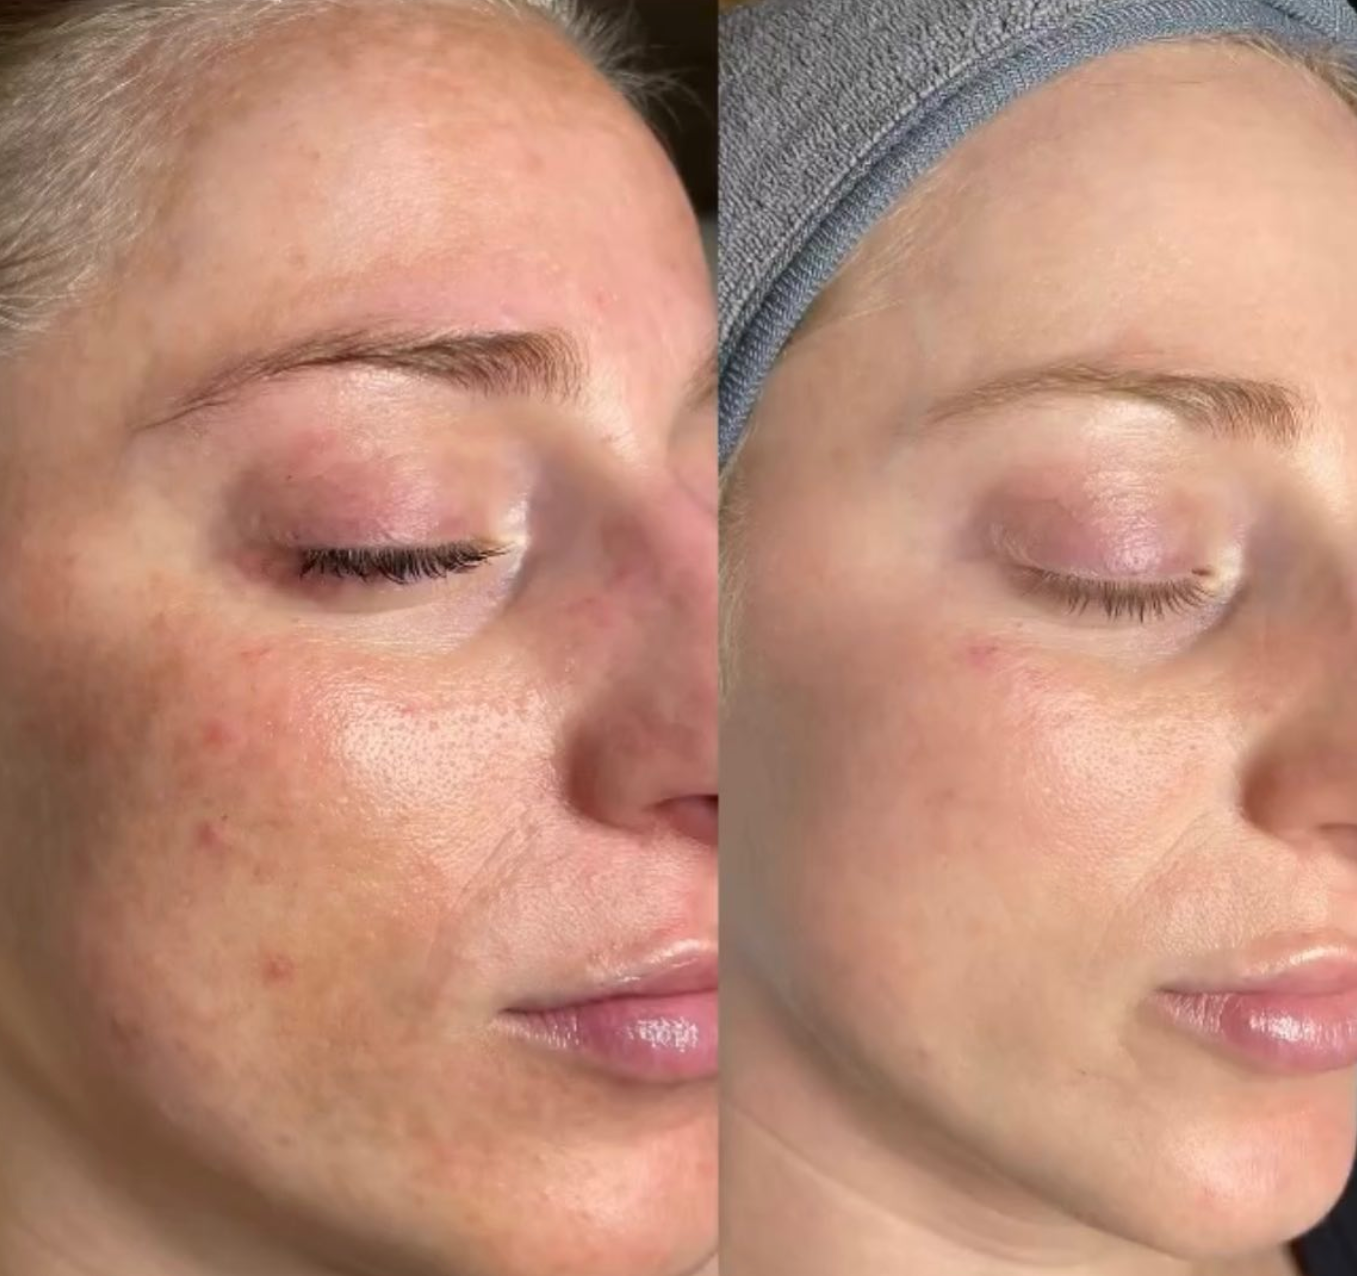 ReveSkin Enlighten Depigmentation System pigmentation even skin tone before and after